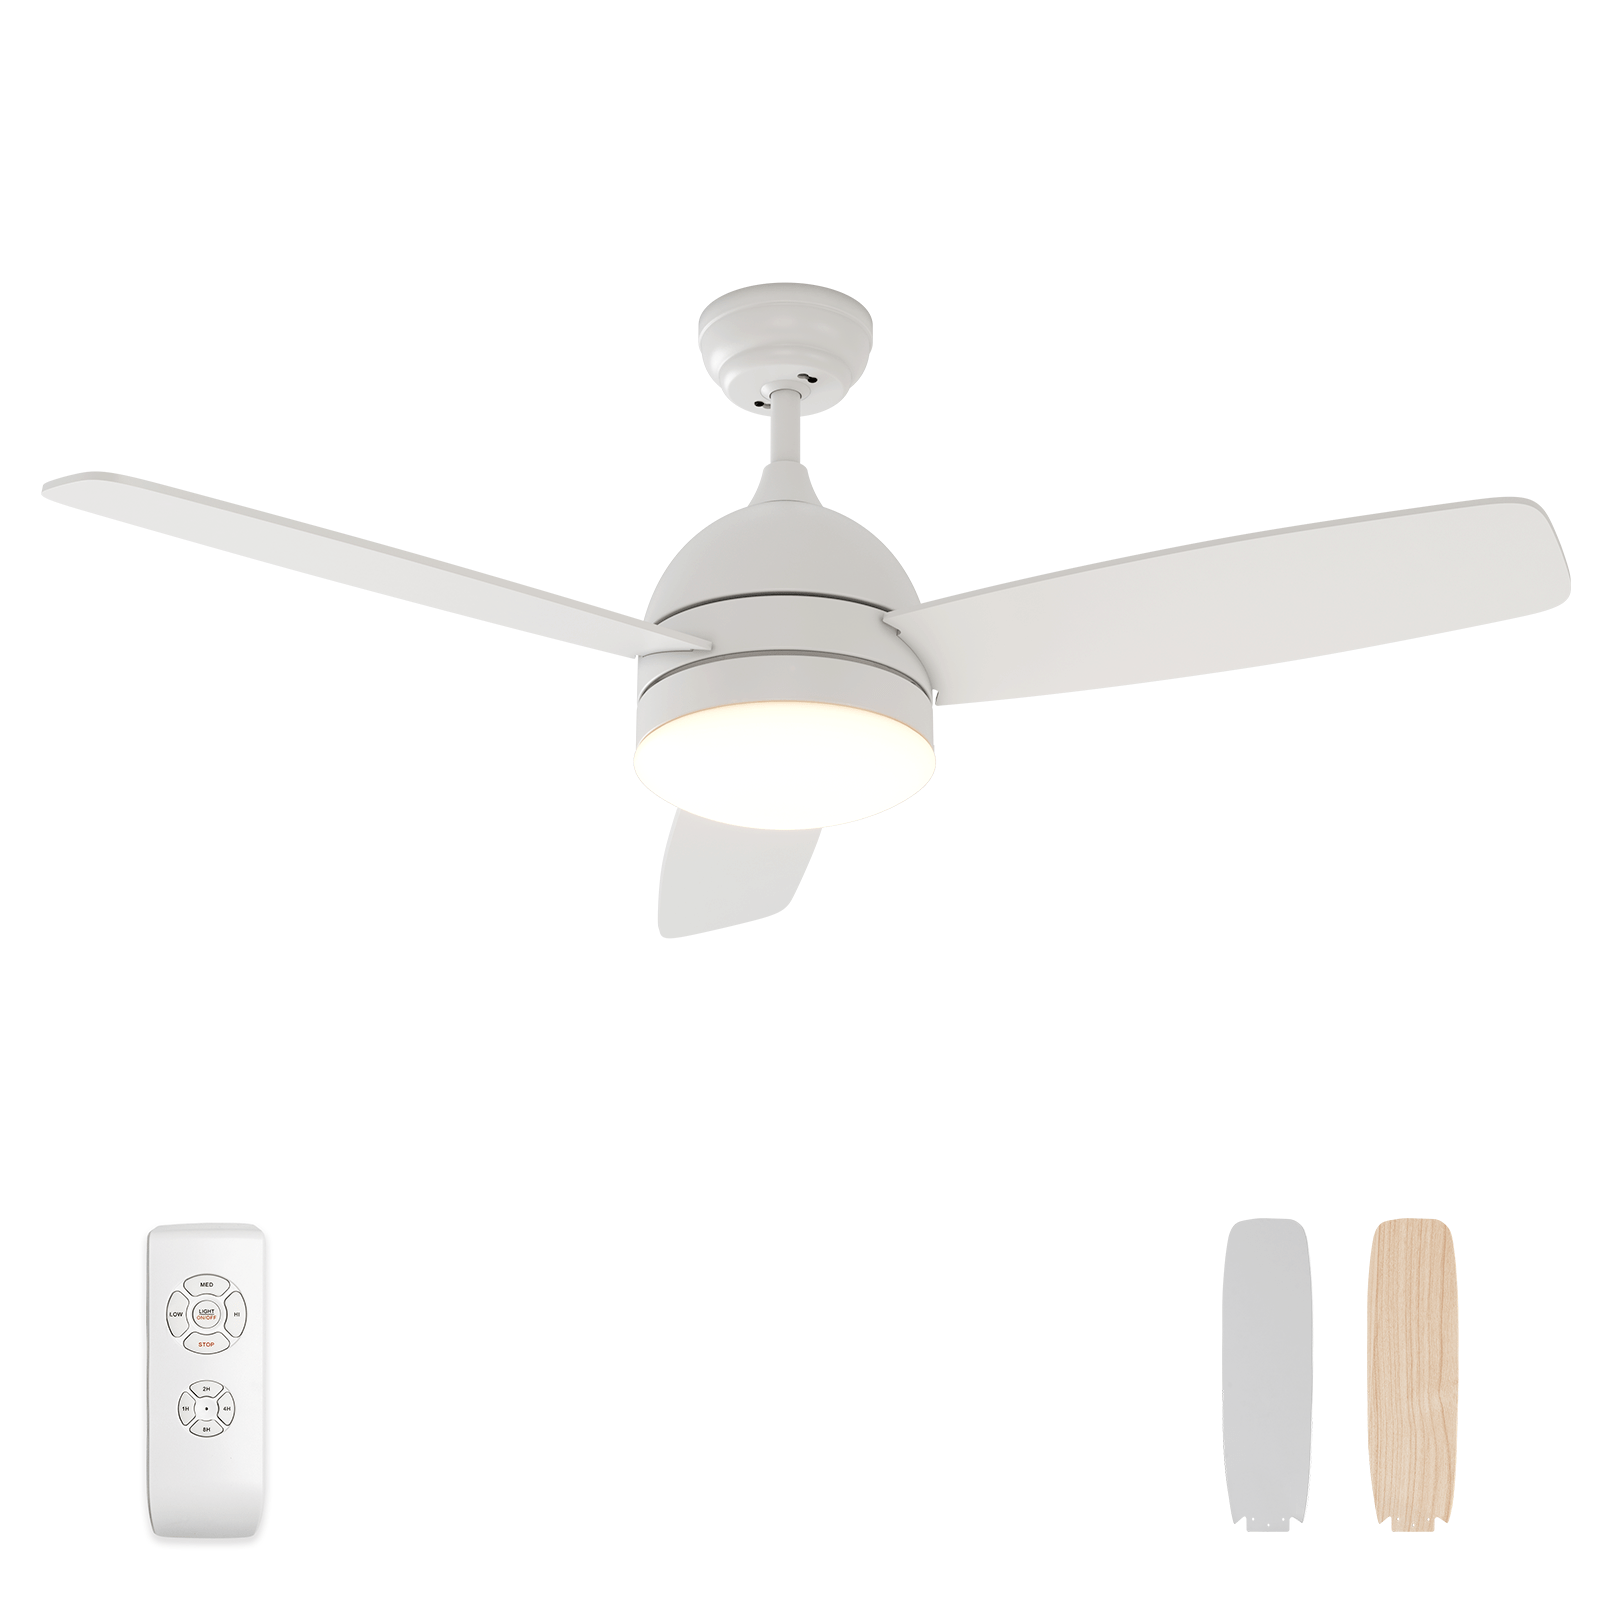 48” Breeze Ceiling Fan（White）